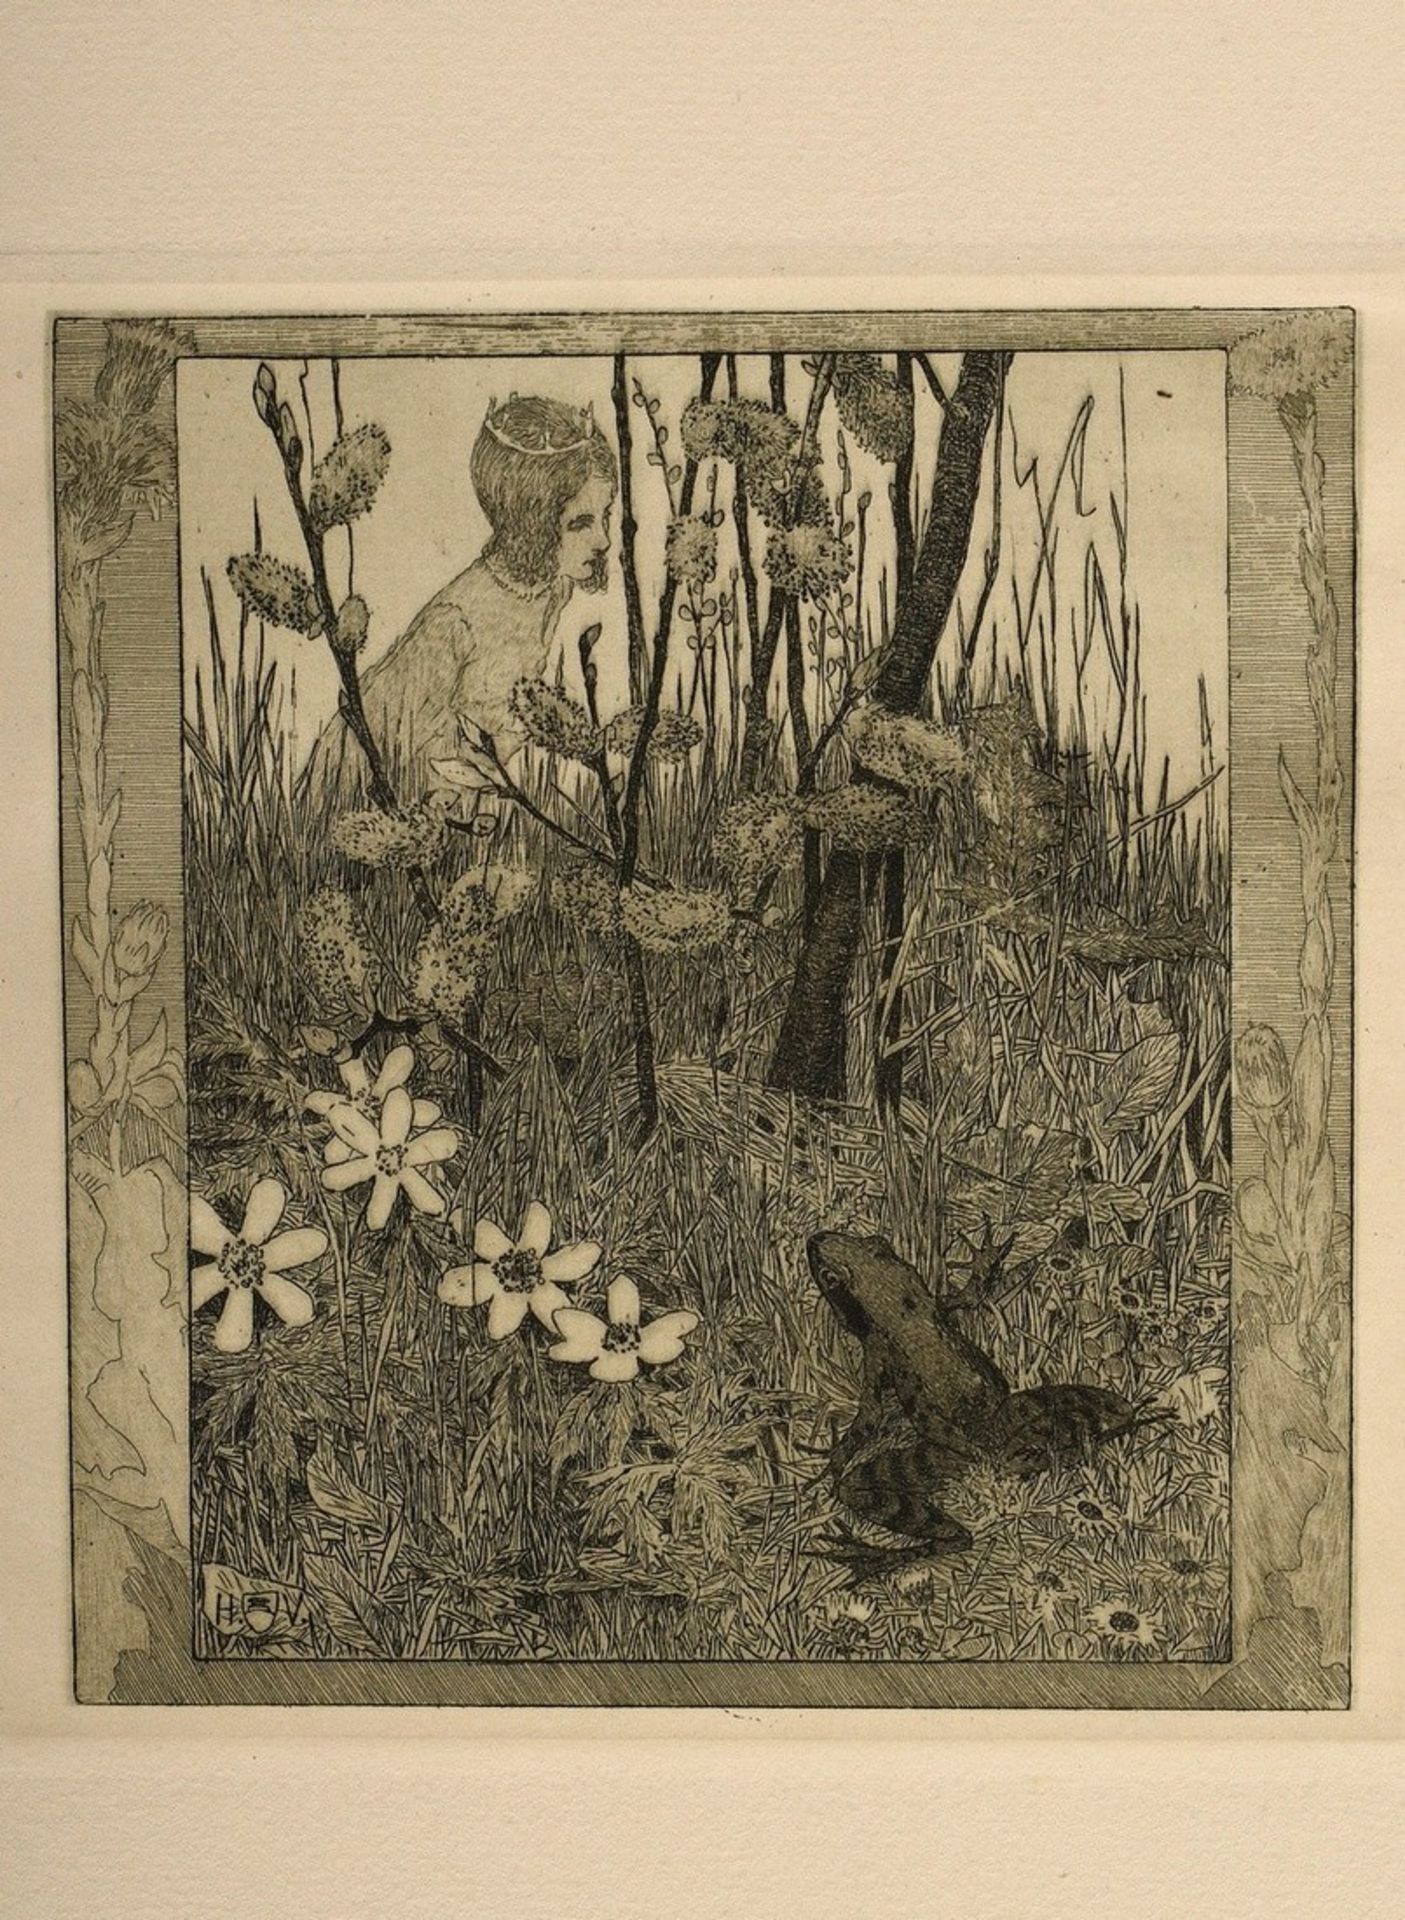 Vogeler, Heinrich (1872-1942) "An den Frühling" 1899/1901, portfolio with 10 etchings and prelimina - Image 7 of 25